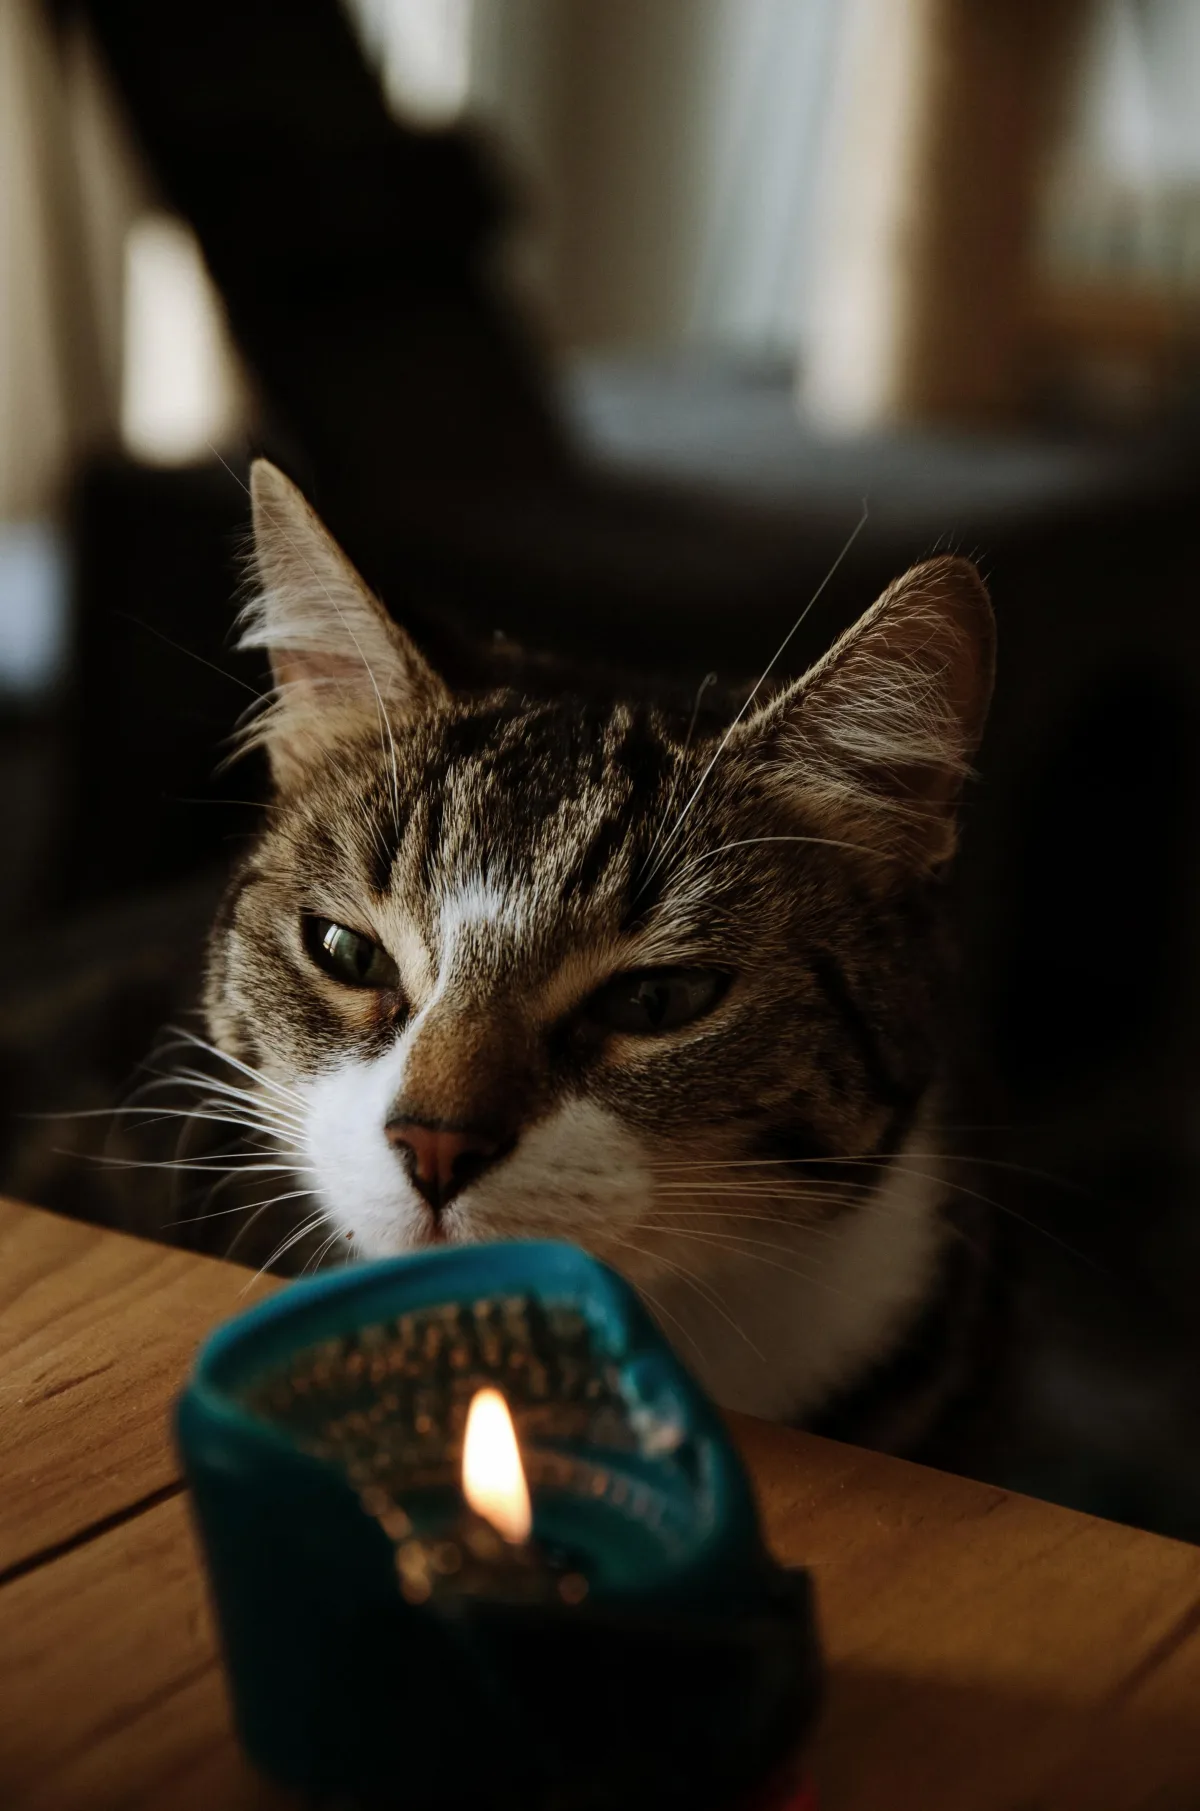 Les bougies sont-elles dangereuses pour nos animaux domestiques ?